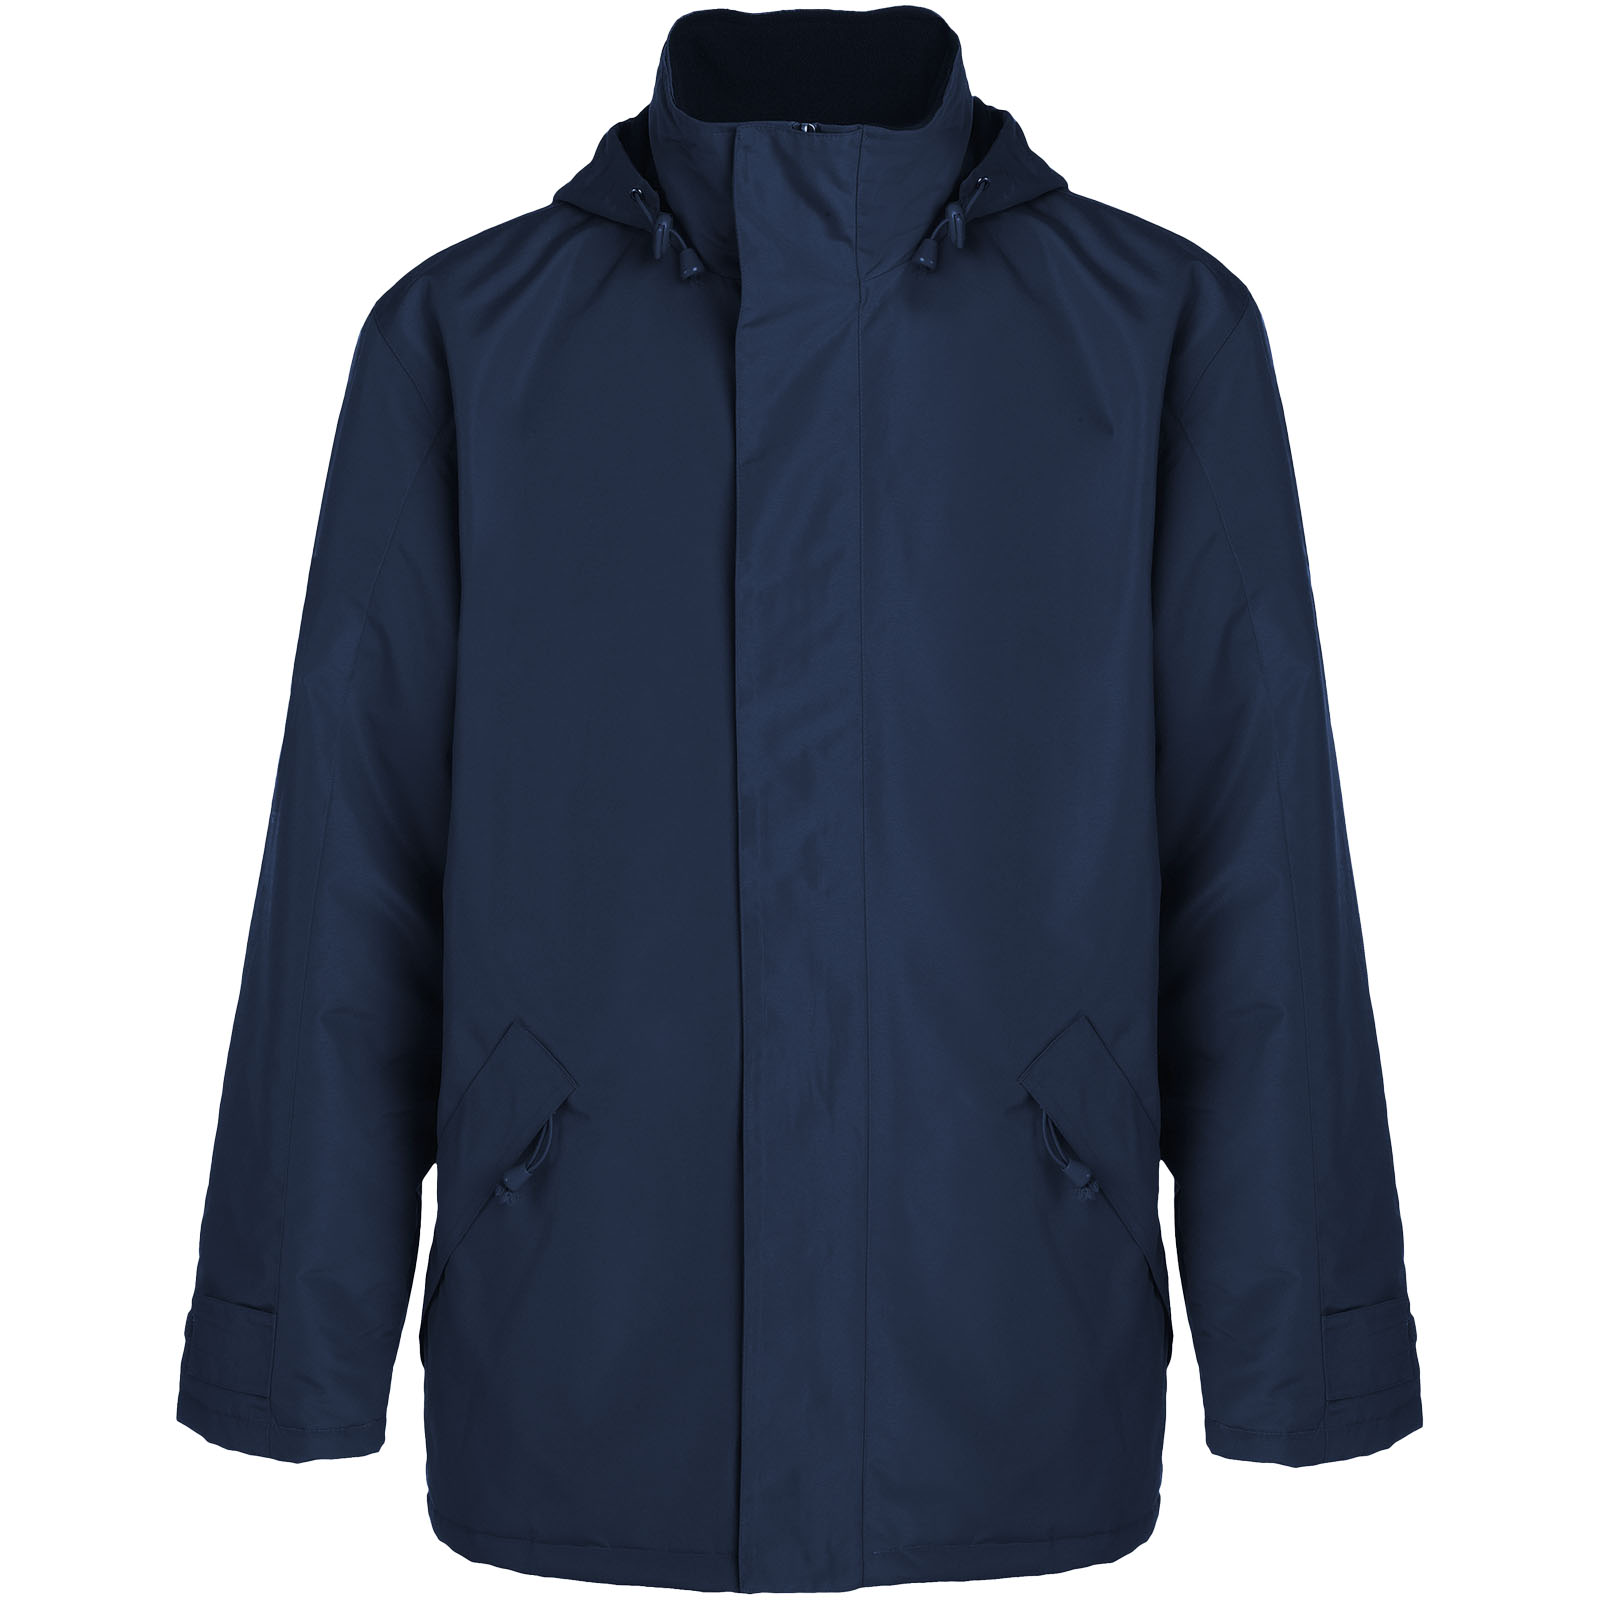 Advertising Jackets - Europa unisex insulated jacket